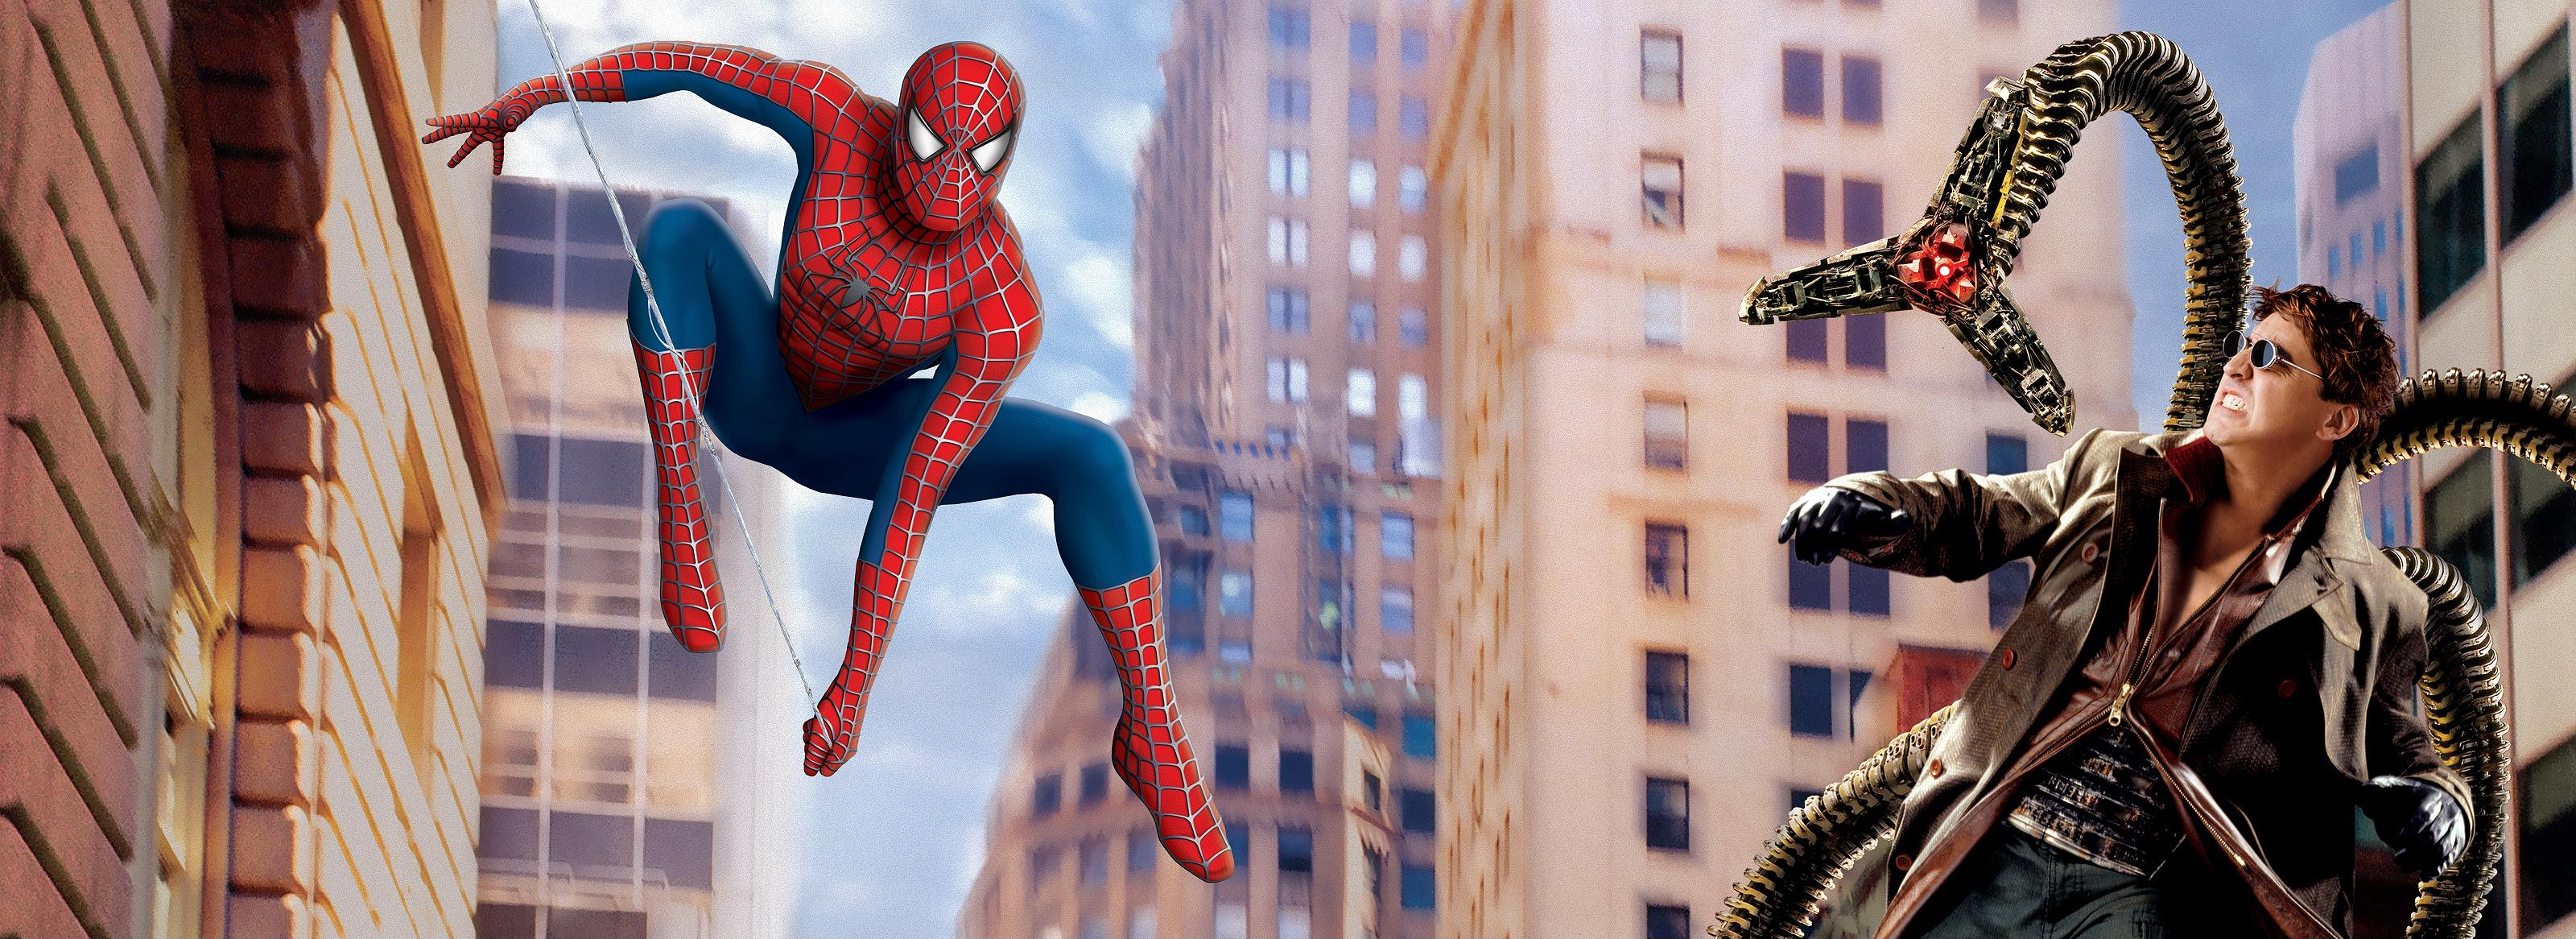 Los mejores fondos de pantalla de Spider Man 2 para la pantalla del teléfono